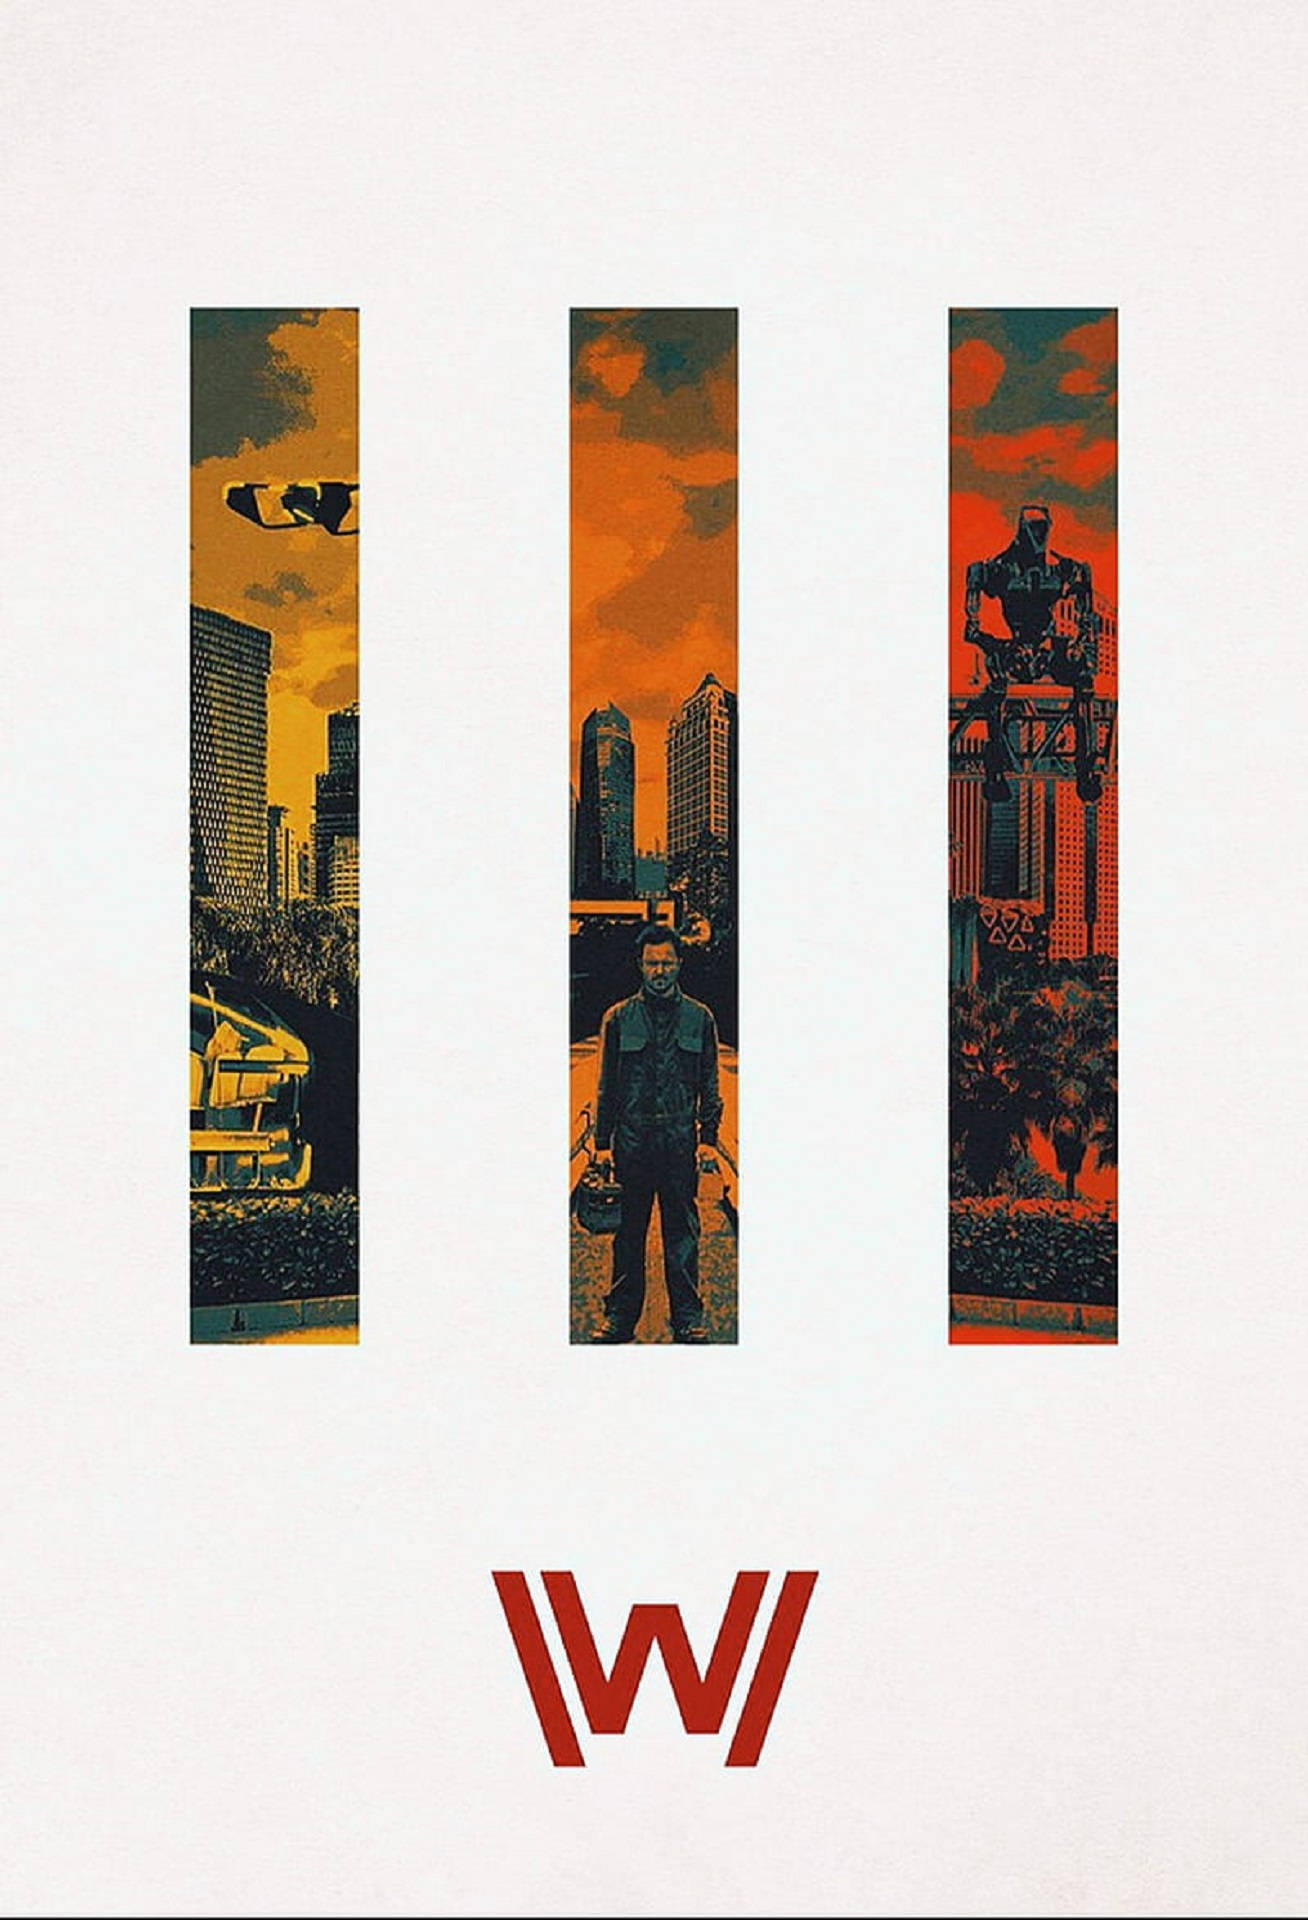 Actor Aaron Paul In Westworld Banner Wallpaper